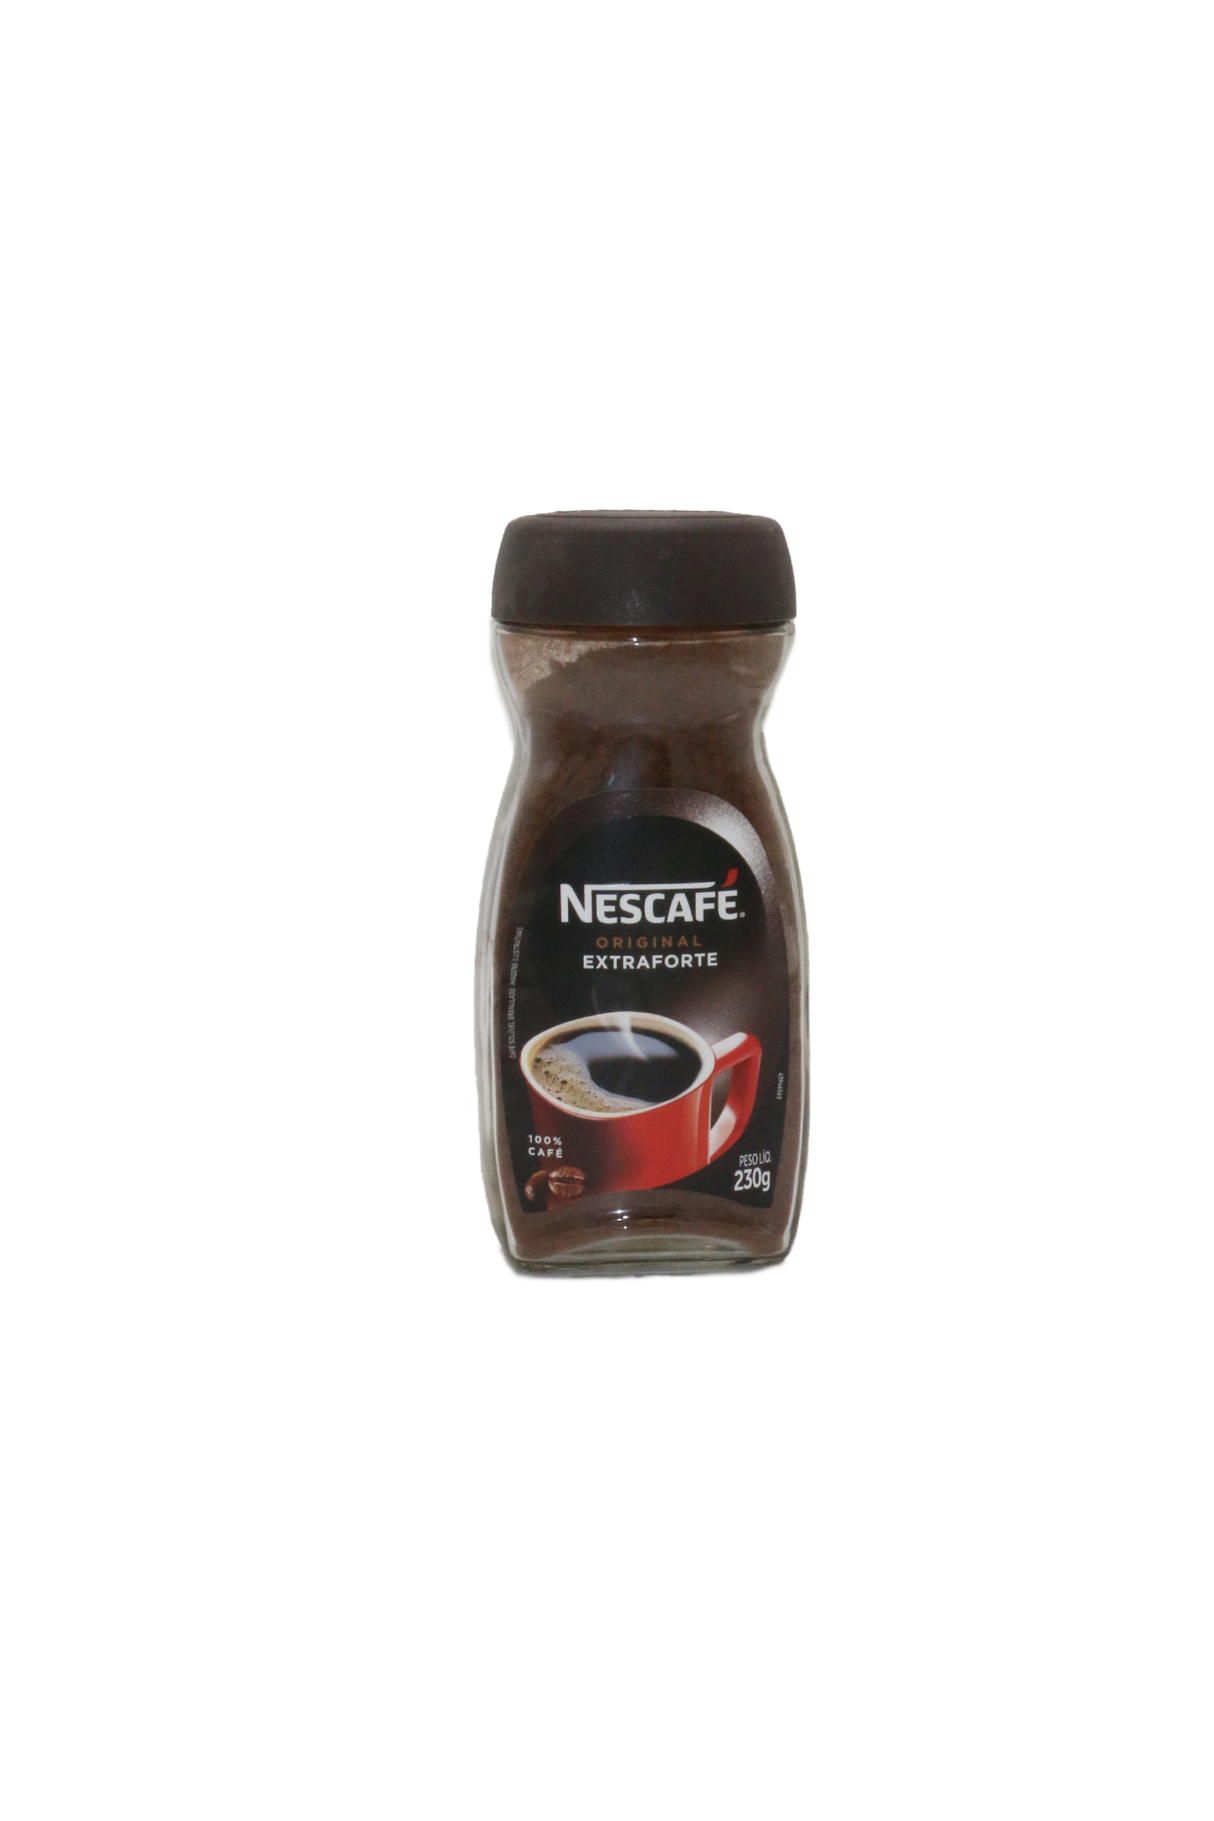 nescafe coffee original extraforte 230g